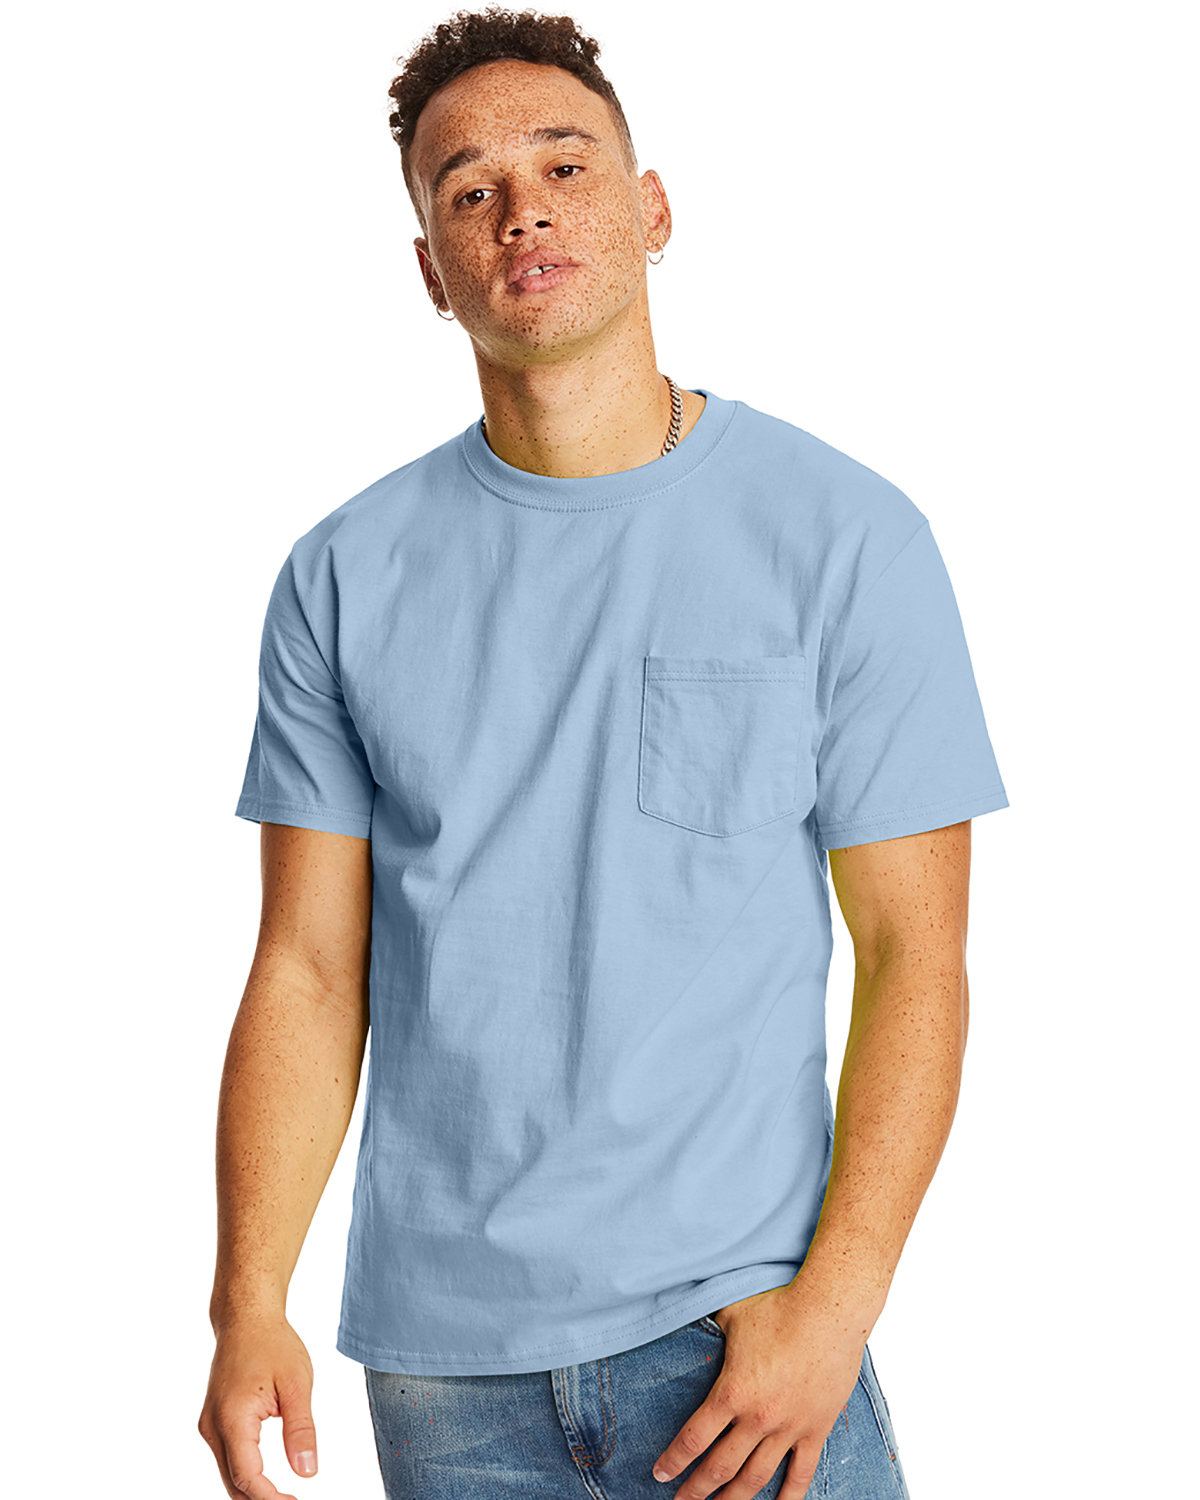 Hanes Men's Authentic-T Pocket T-Shirt light blue 